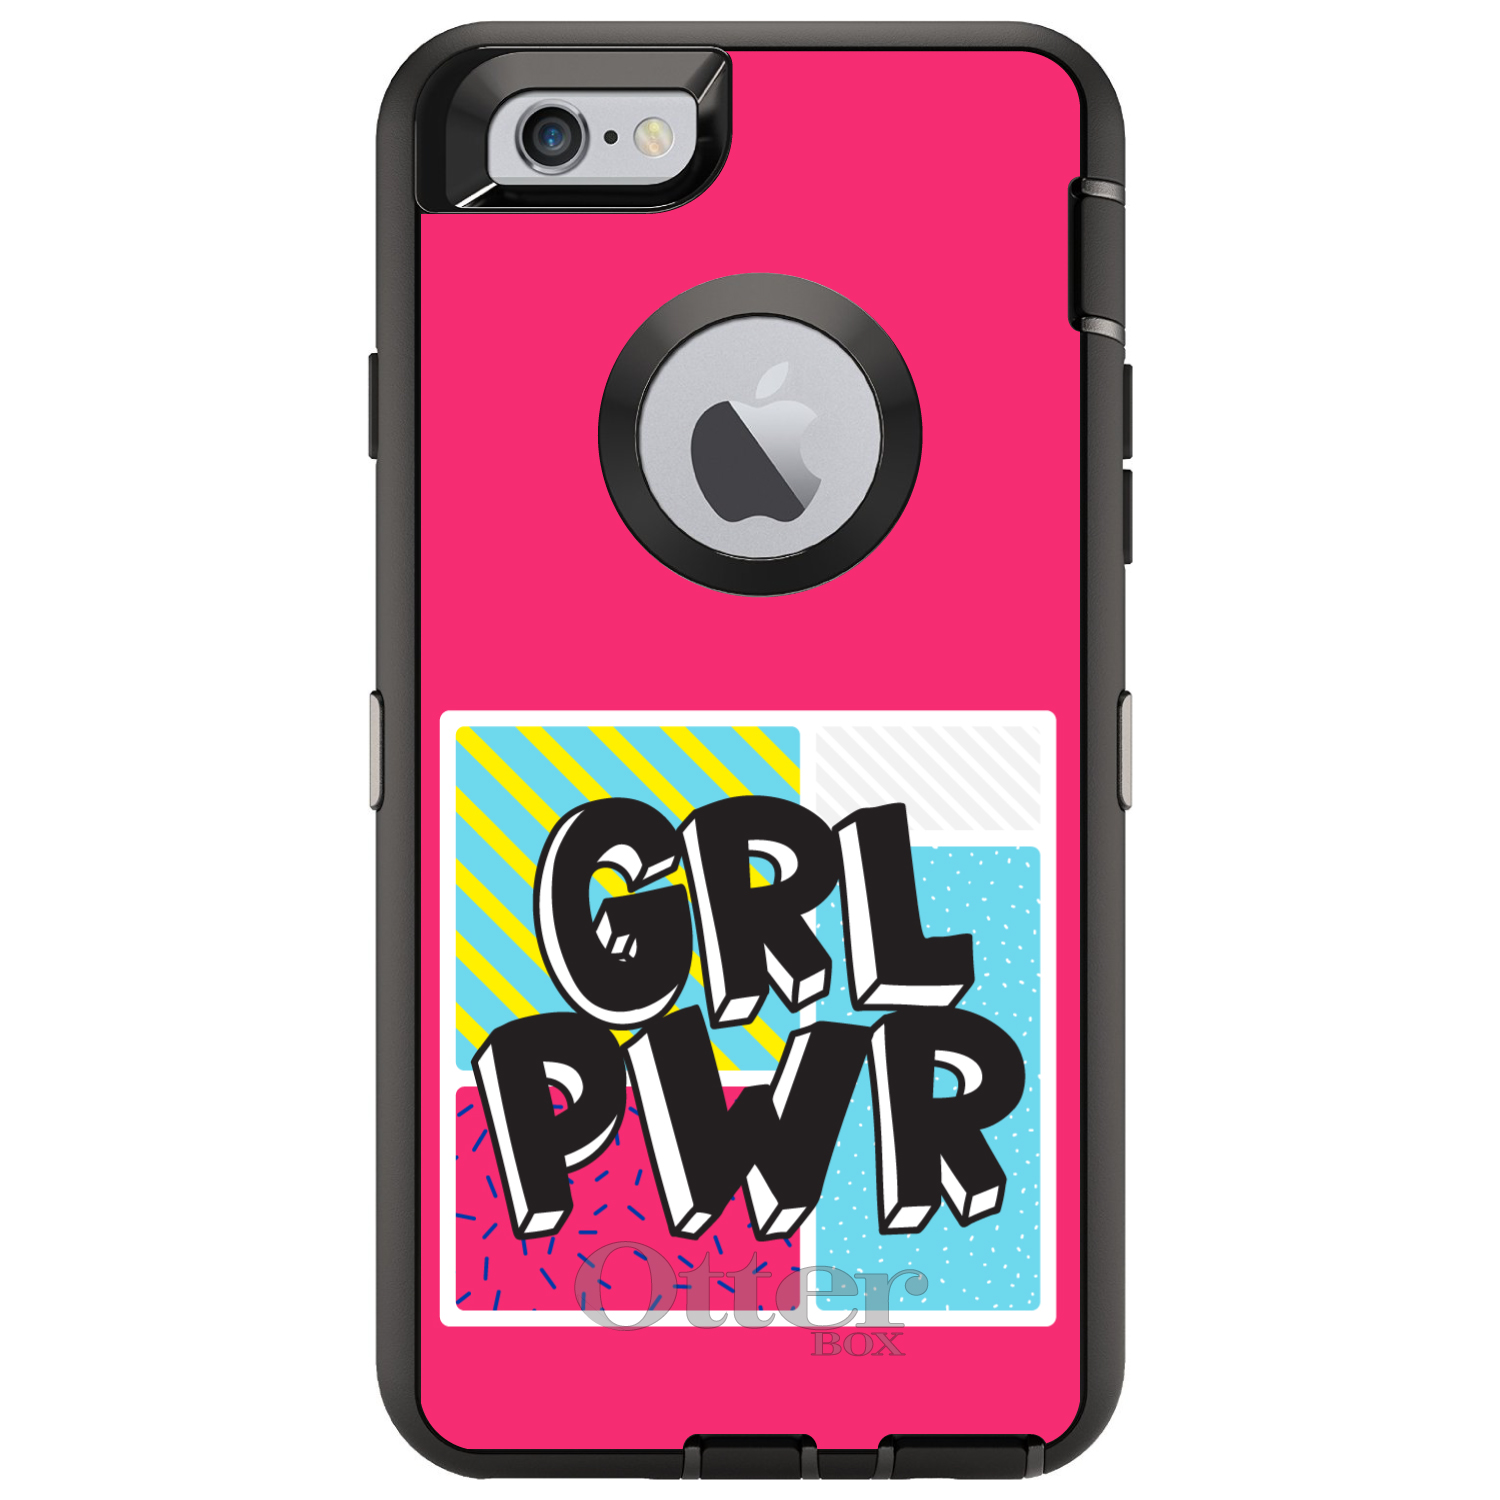 GRL PWR - sức mạnh của những cô gái trẻ đang dần trỗi dậy! Không chỉ là một thông điệp đầy tích cực, GRL PWR còn thể hiện qua vô vàn những kiểu trang phục và phụ kiện thú vị và cá tính. Hãy để hình ảnh của GRL PWR chứa đựng sức mạnh và niềm tin vào bản thân bạn!